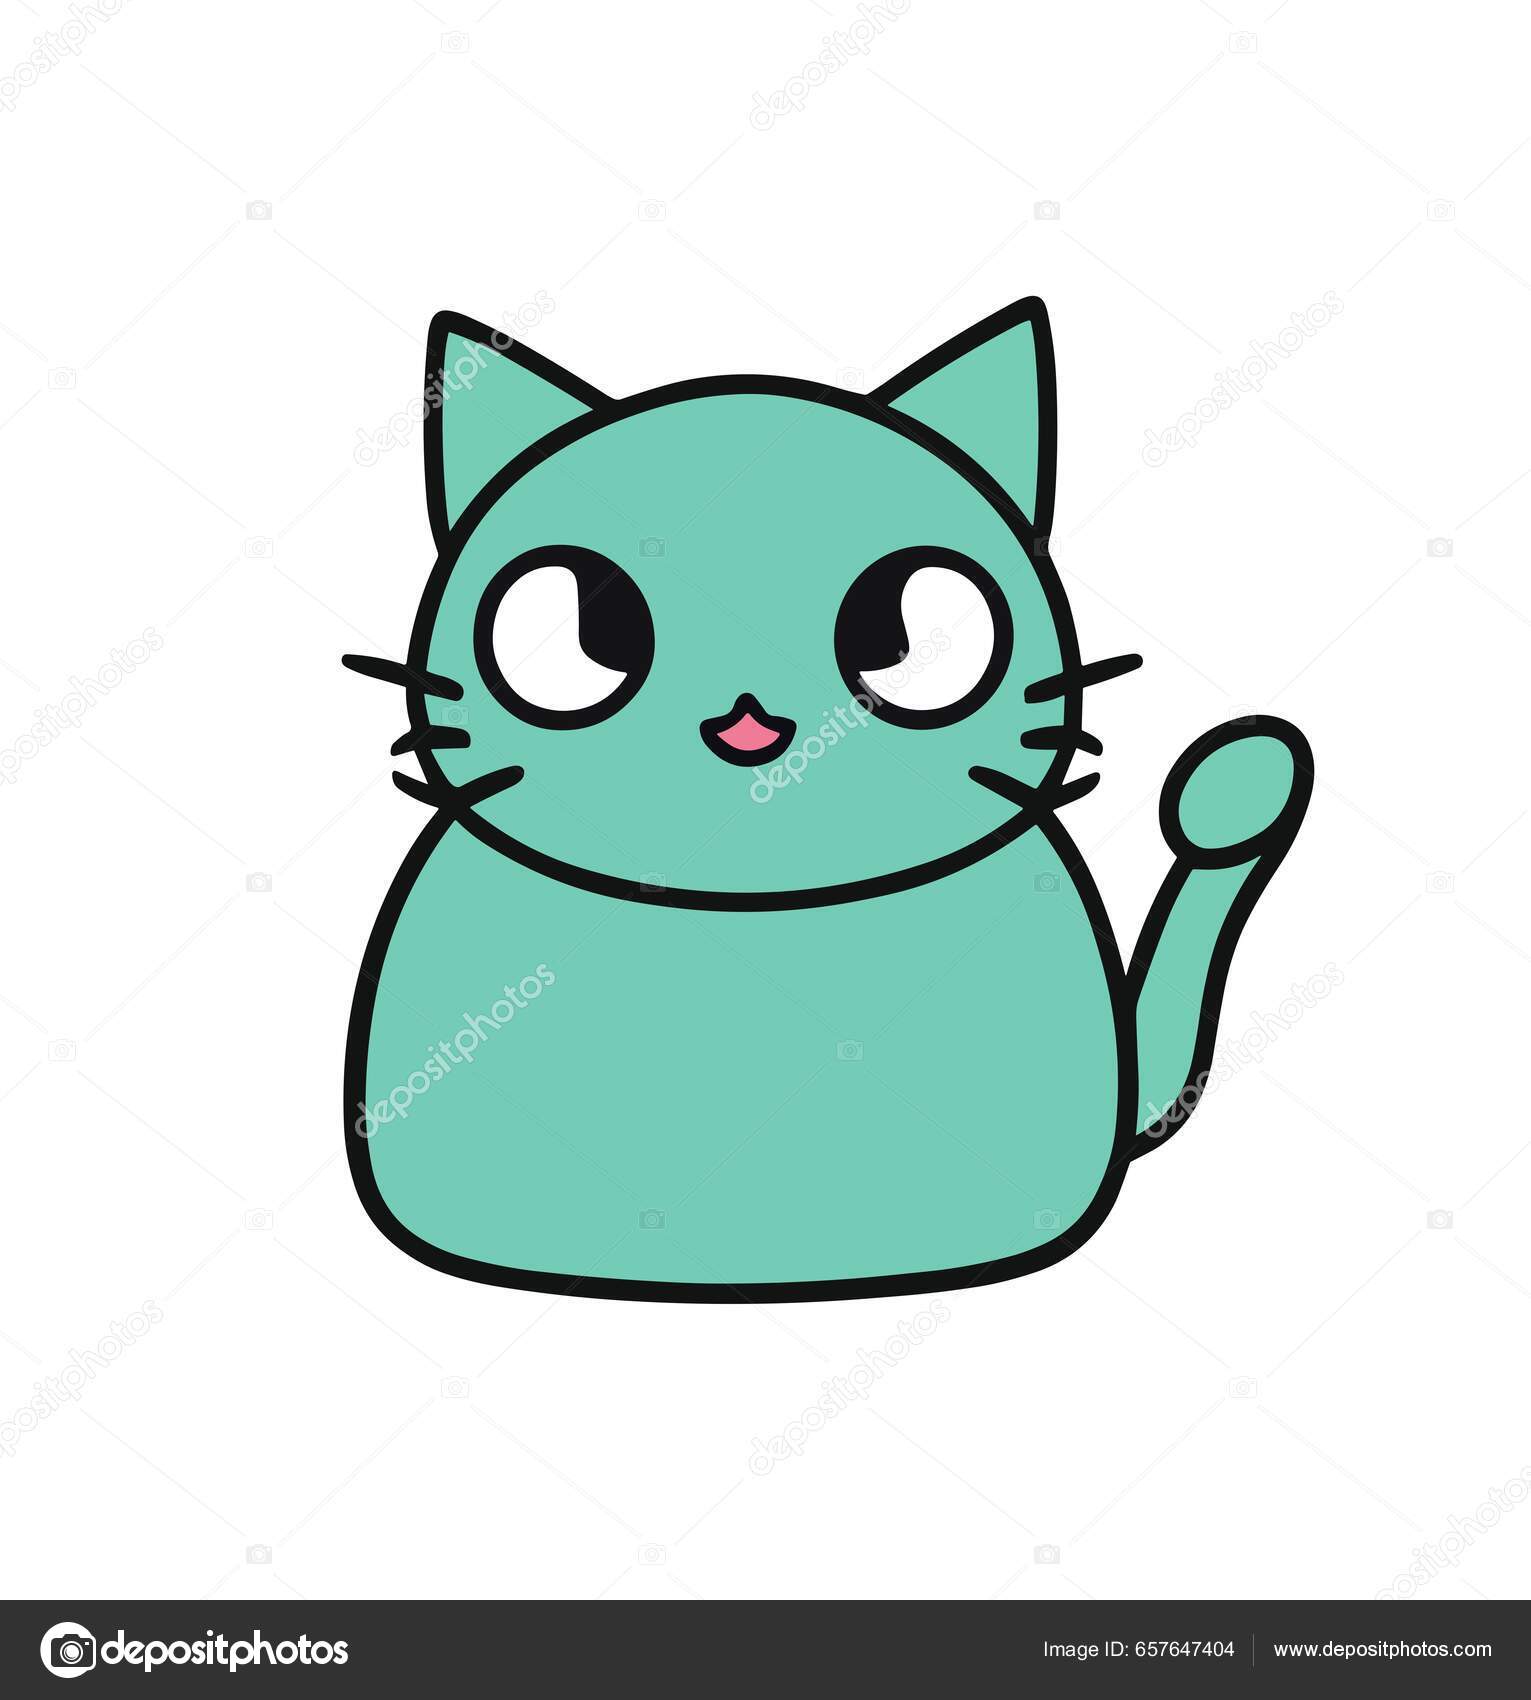 ilustração em vetor gato kawaii fofo de gatinho feliz dos desenhos